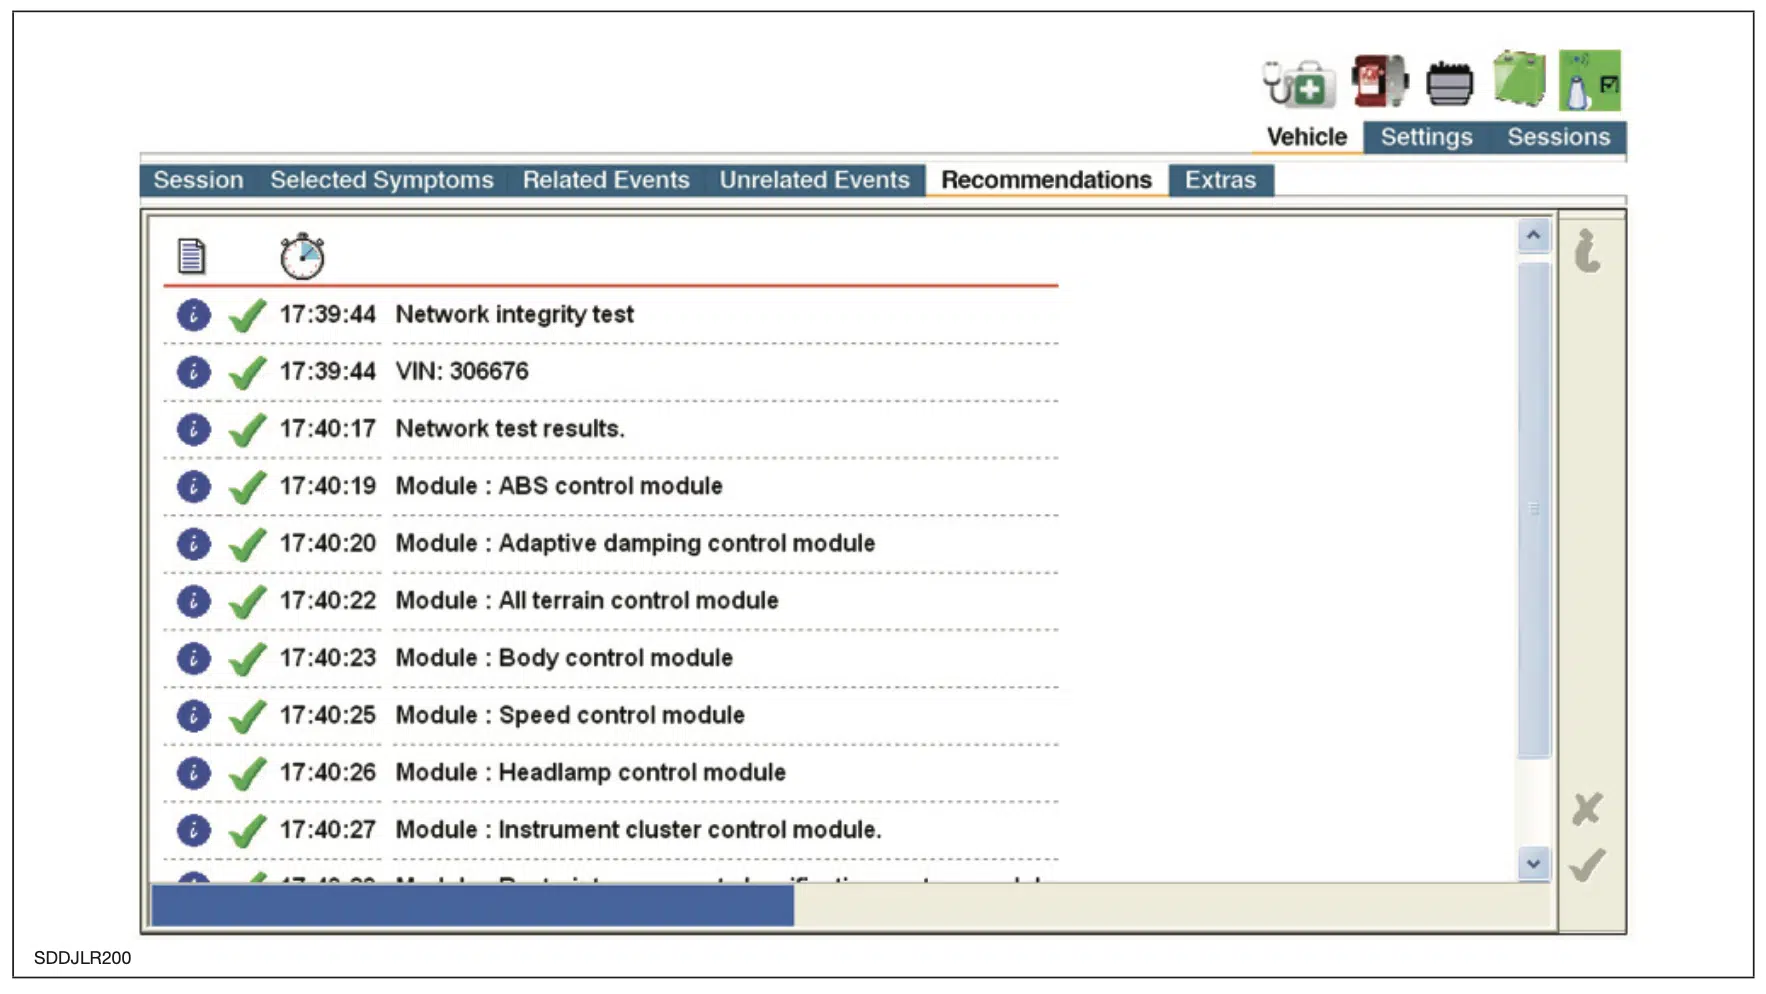 Zrzut ekranu sesji oprogramowania JLR SDD dla listy kontrolnej zalecanych działań po zgłoszeniu objawów pojazdu